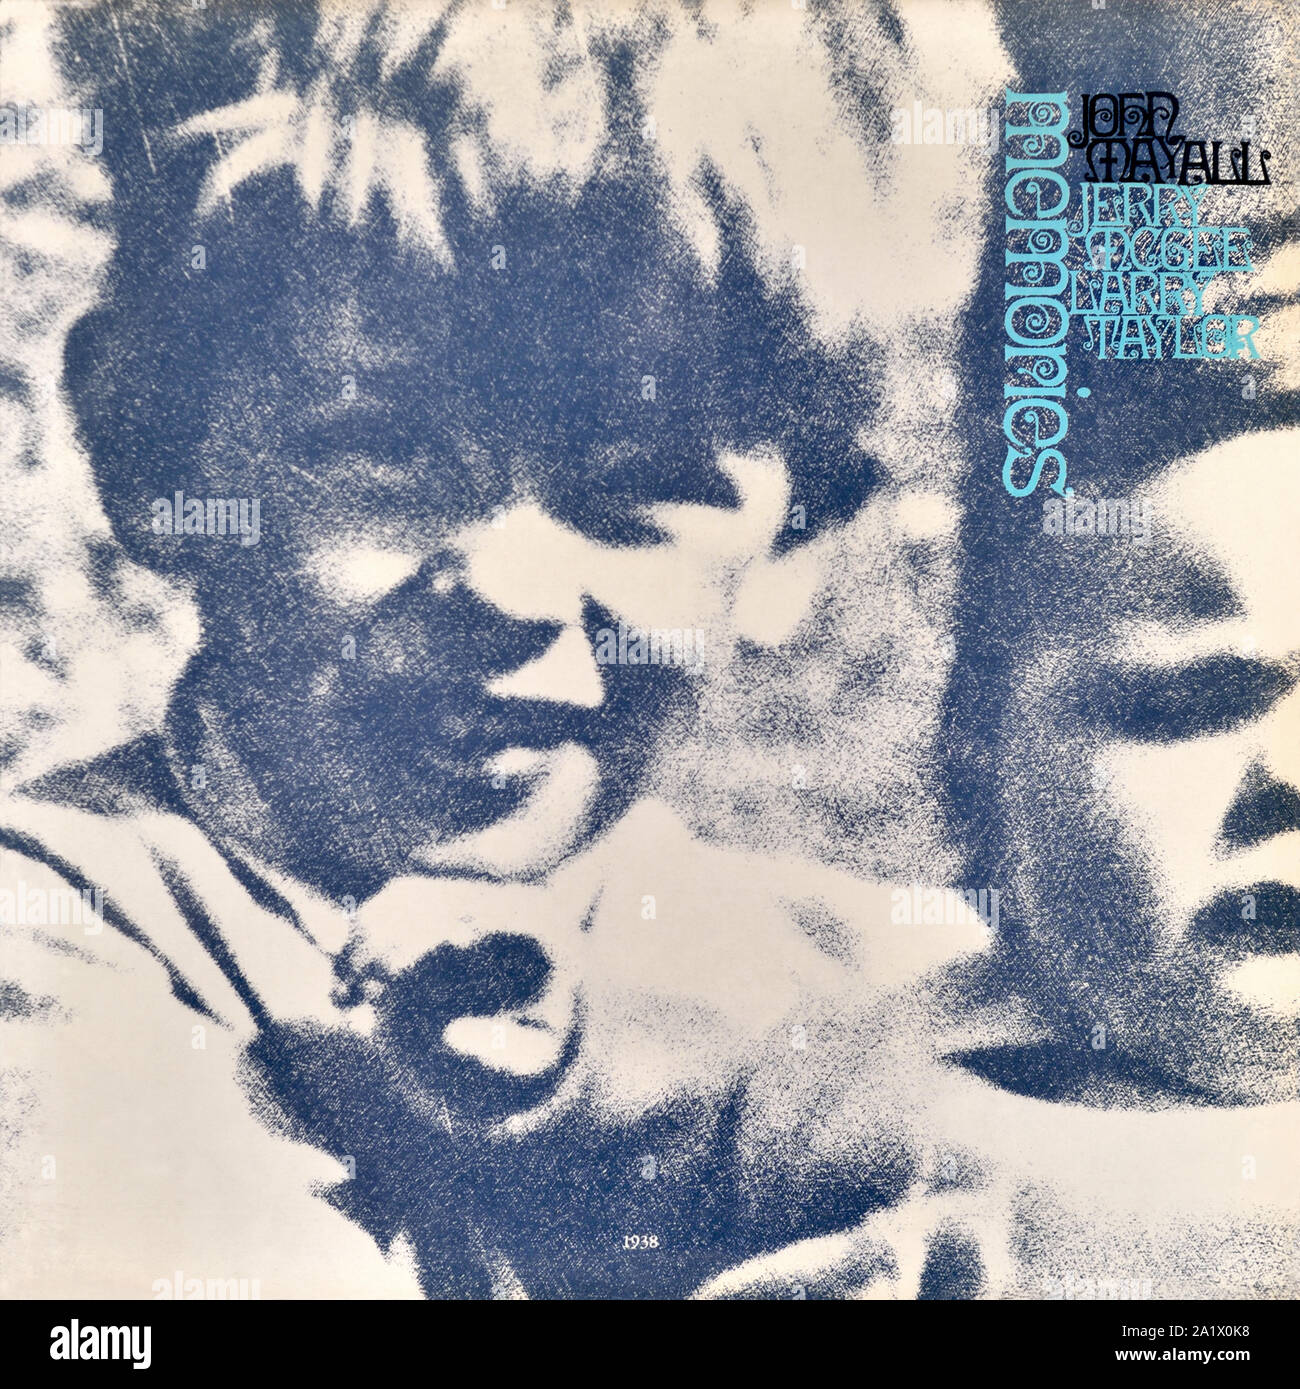 John Mayall - original vinyl album cover - Memories - 1971 Stock Photo